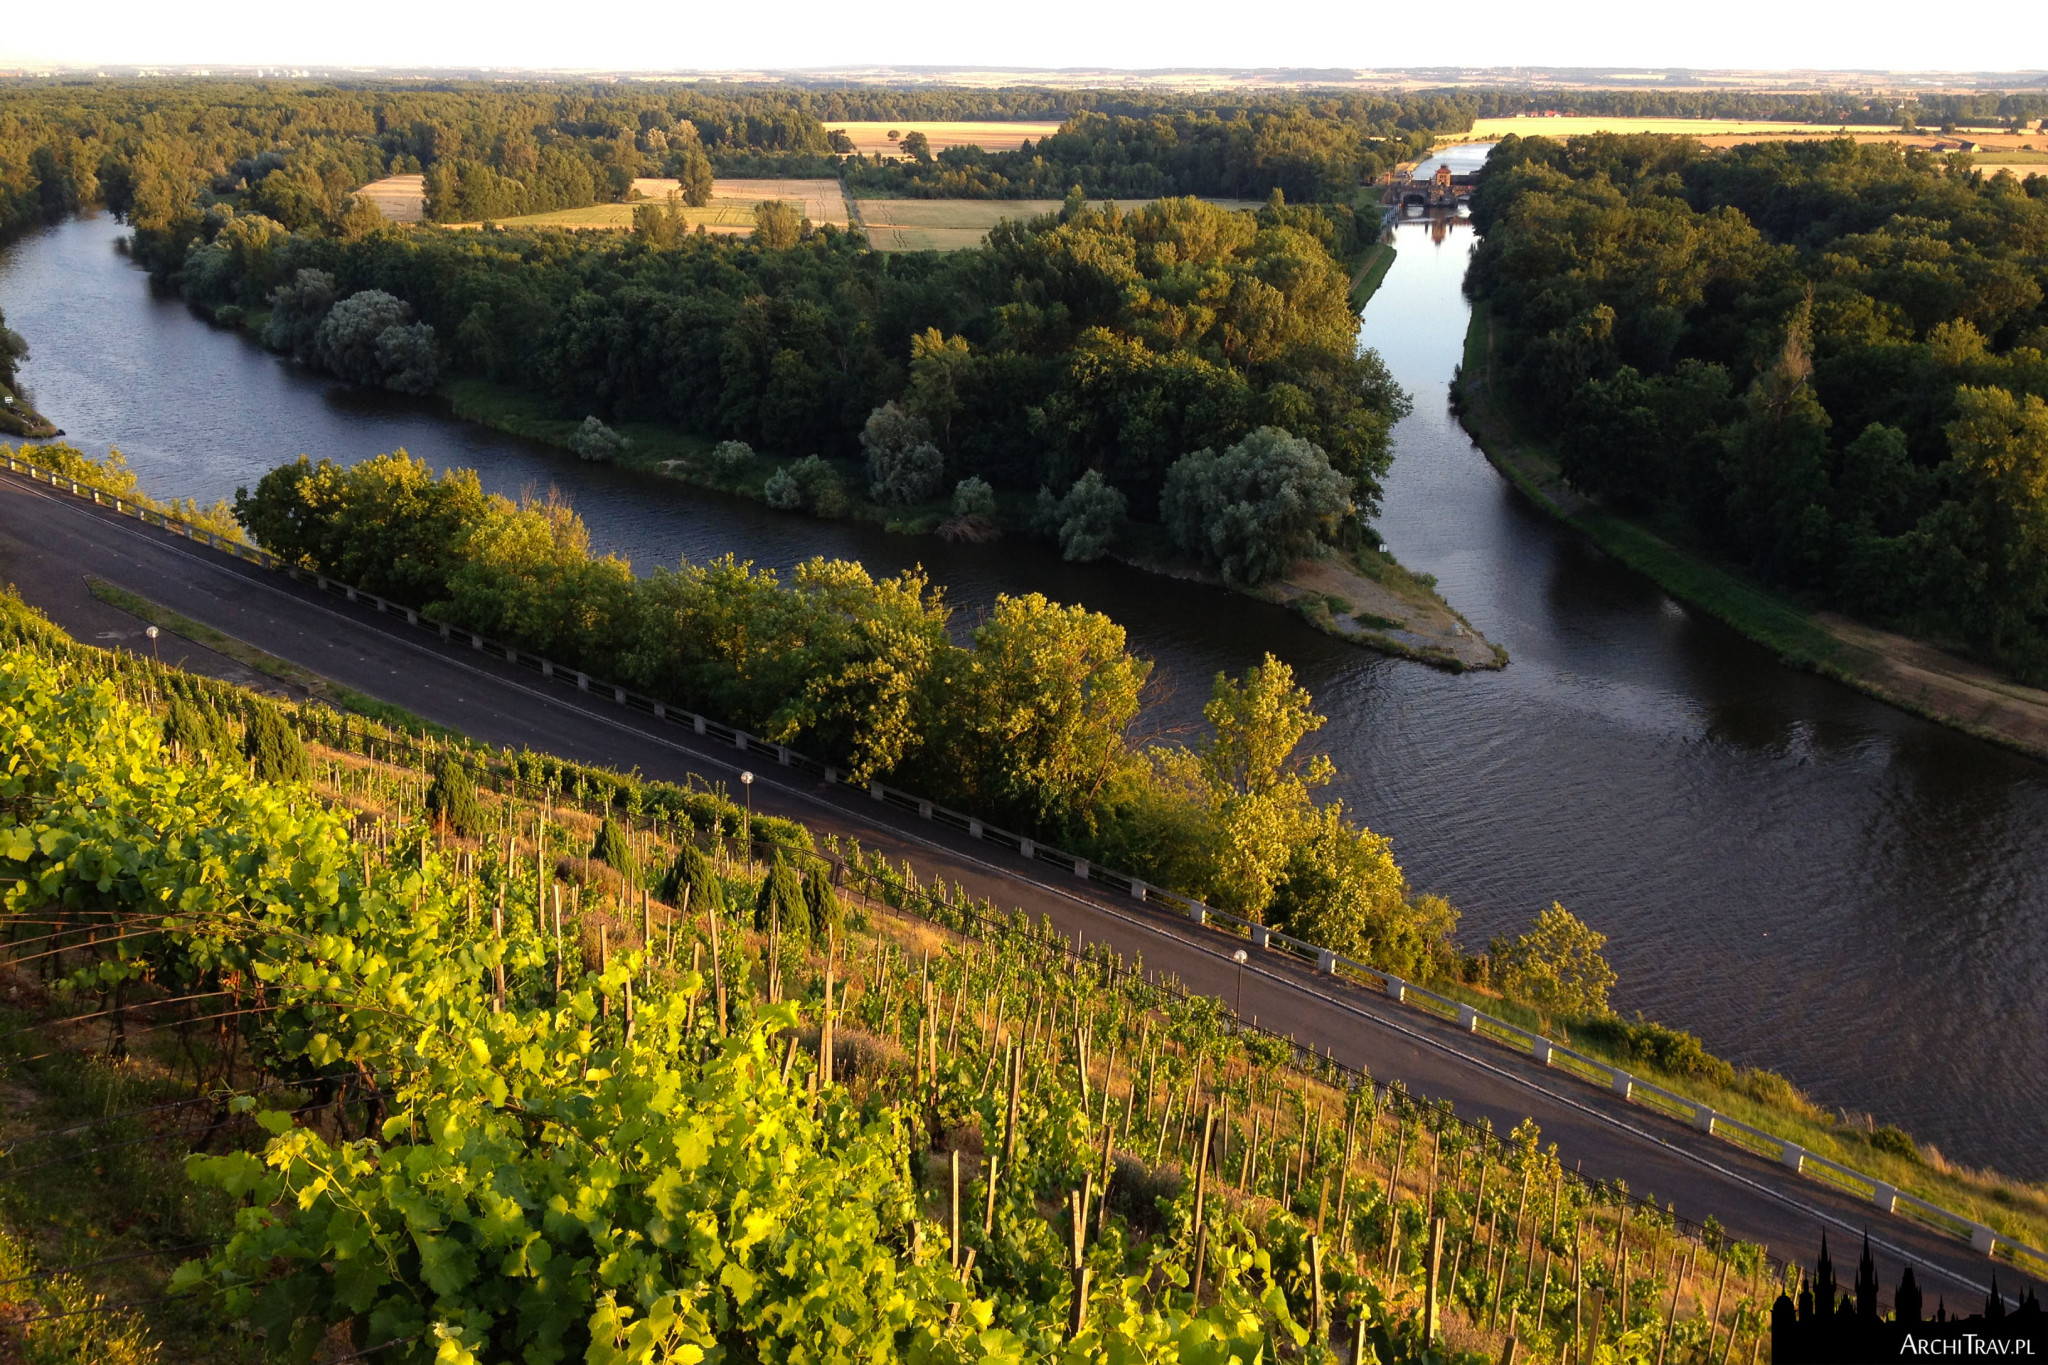 widok na połączenie dwóch rzek - Łaby i Wełtawy, malownicze zielone tereny z winnicami, Mielnik w Czechach